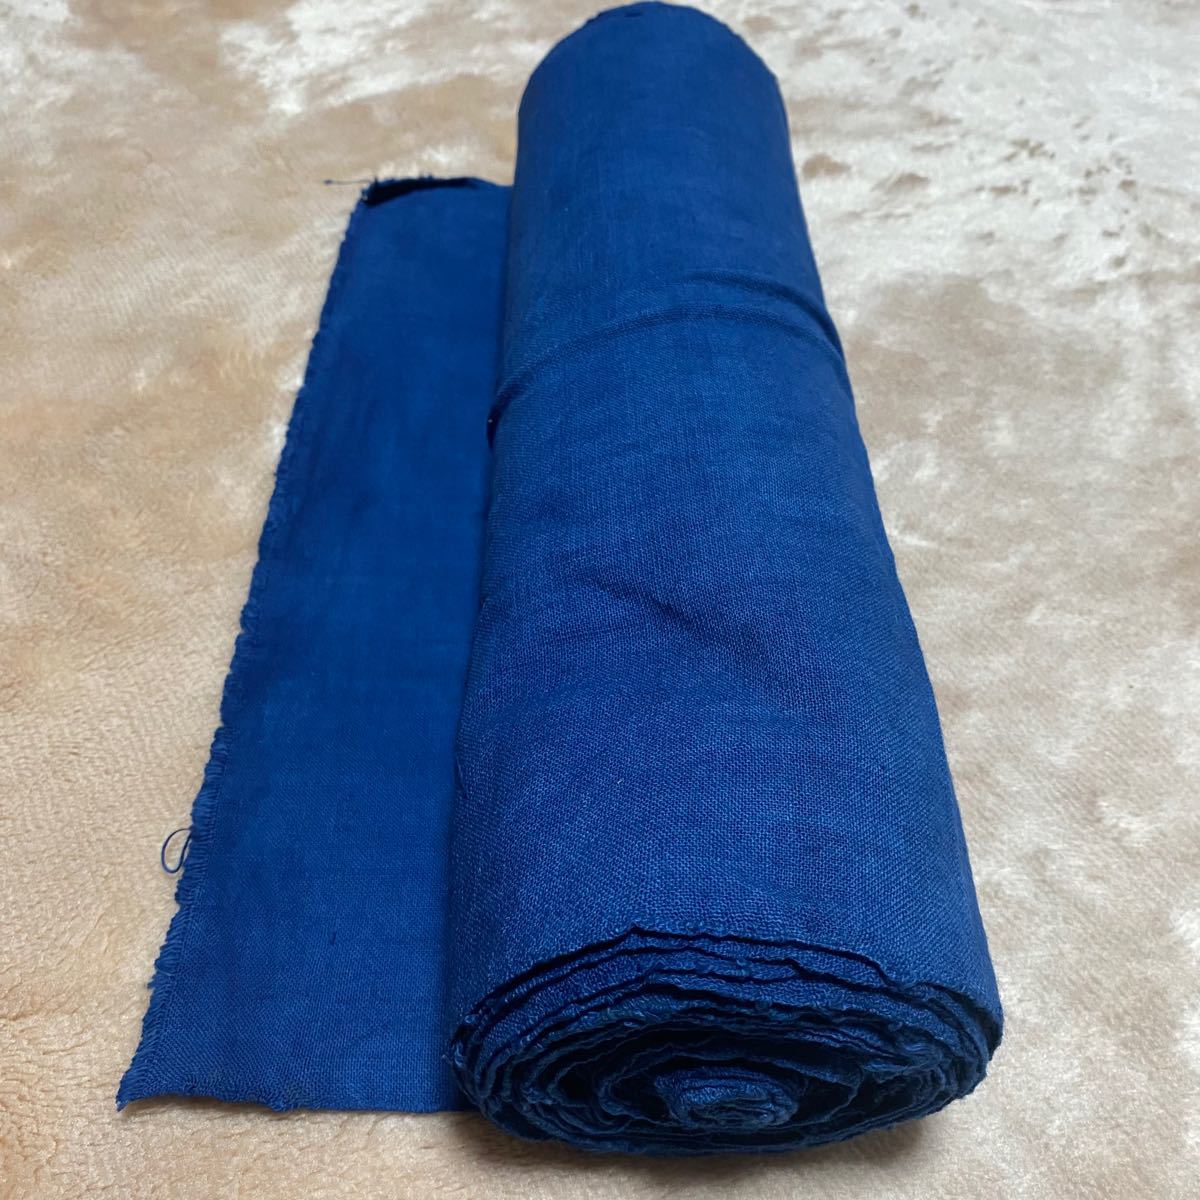 ラオス 少数民族 レンテン族 手織り 木綿布 反物 藍染め 青 長さ8m以上 コットン生地